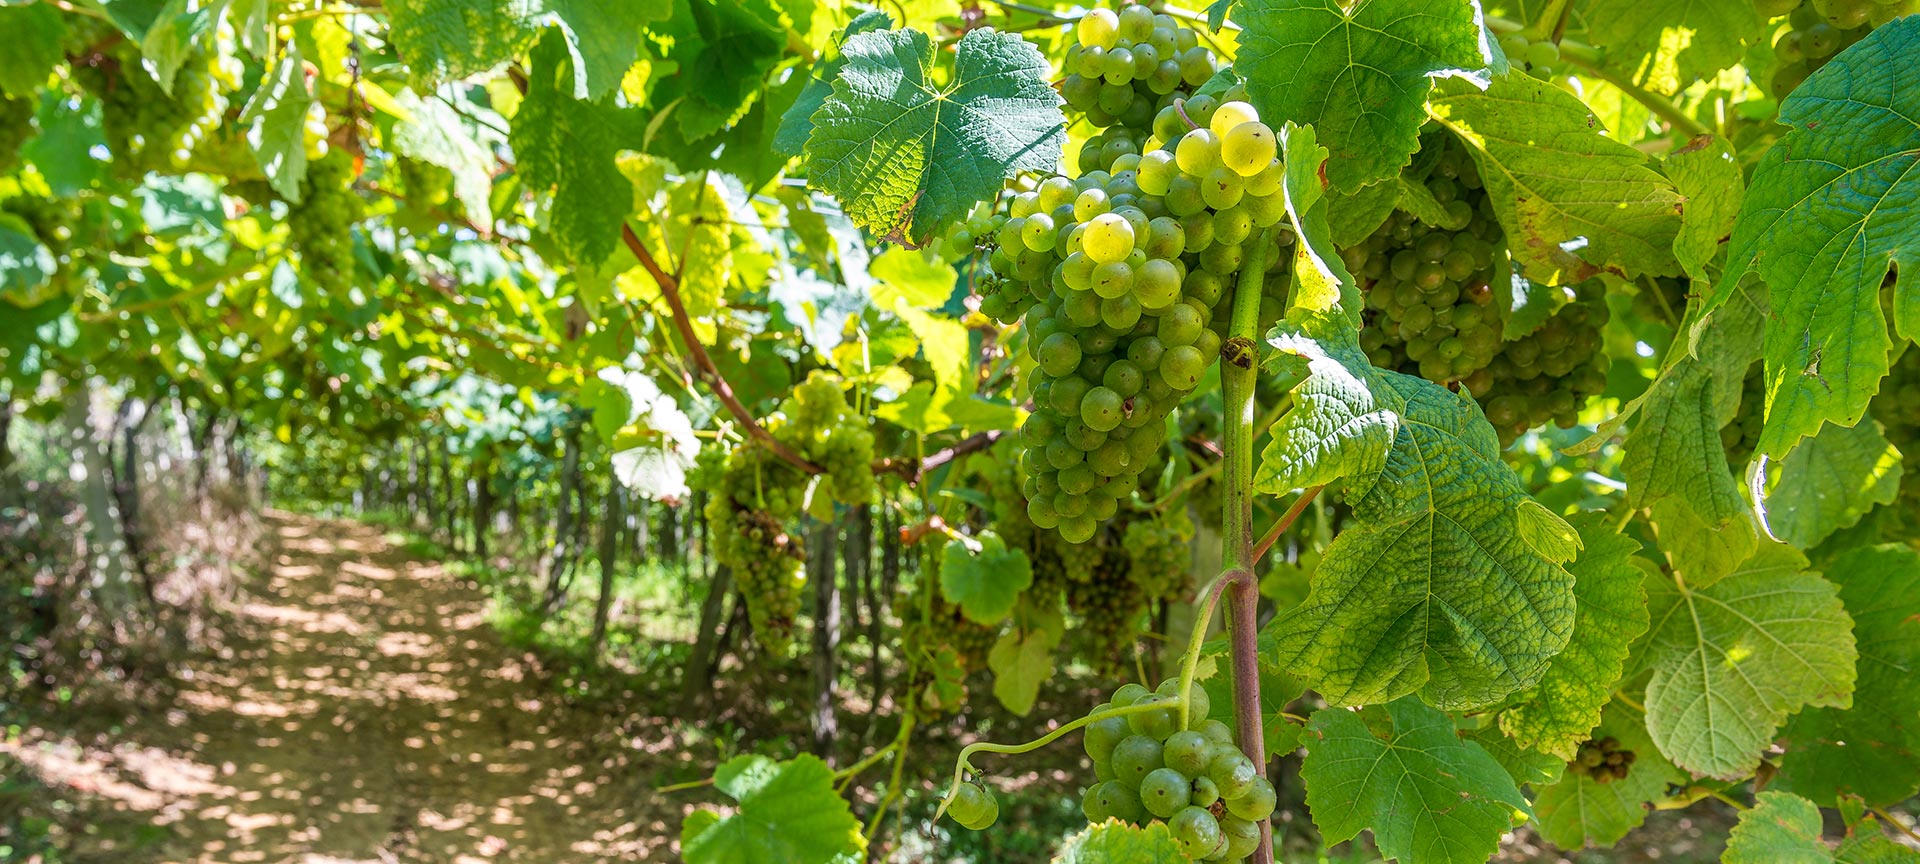 Wijngaard met rijpe witte druiven in zonlicht.